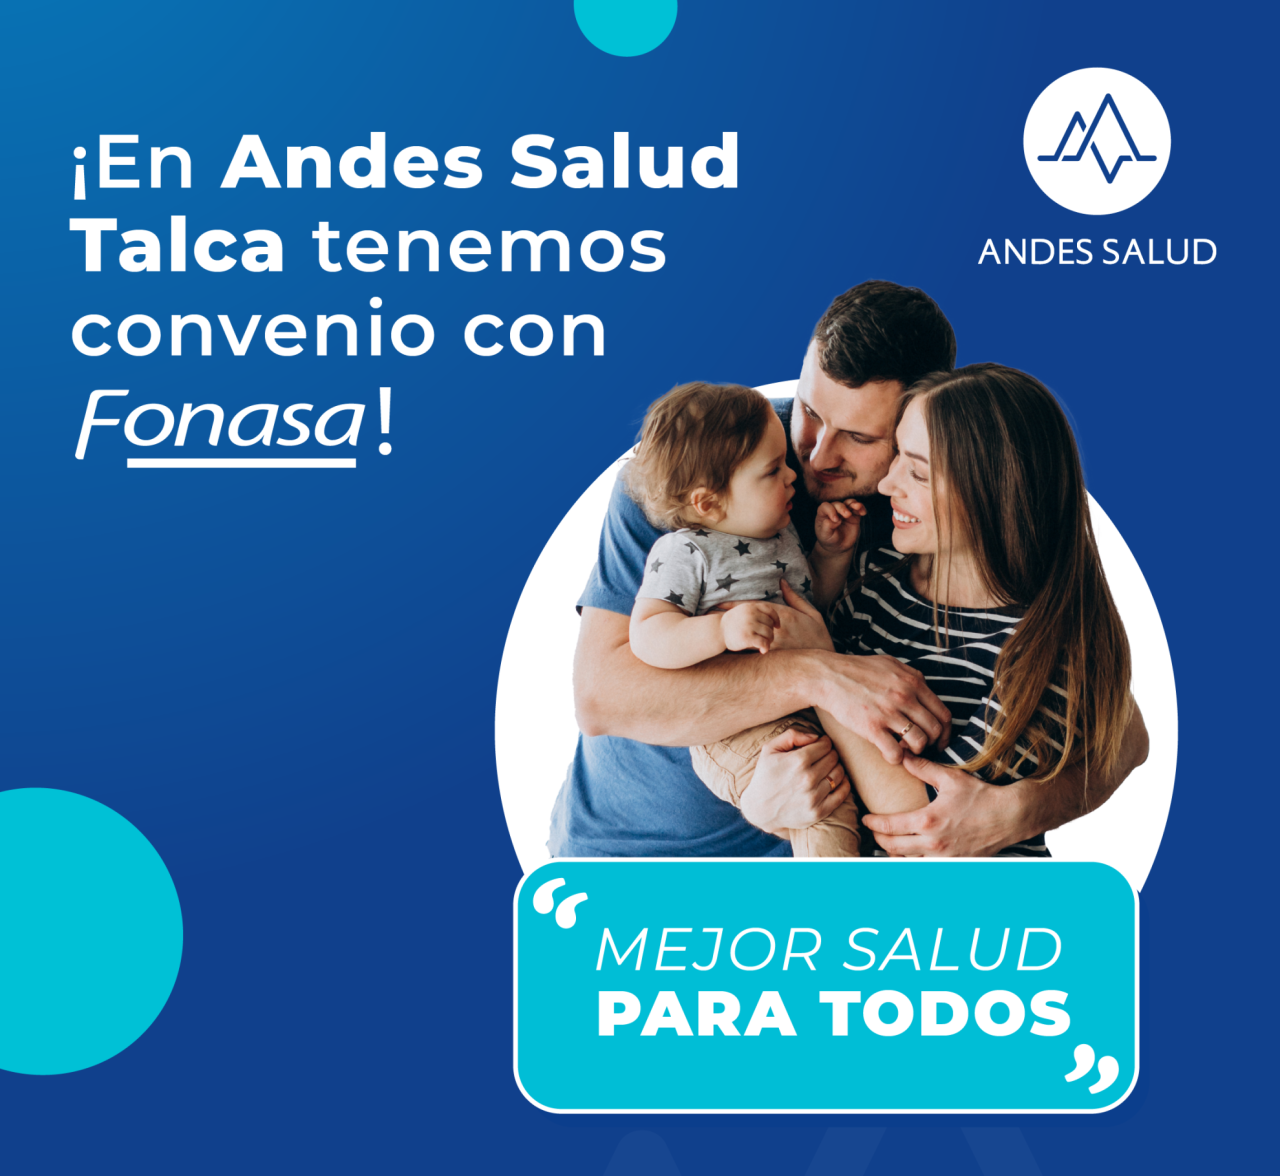 Andes Salud Talca fortalece su compromiso con la sal...